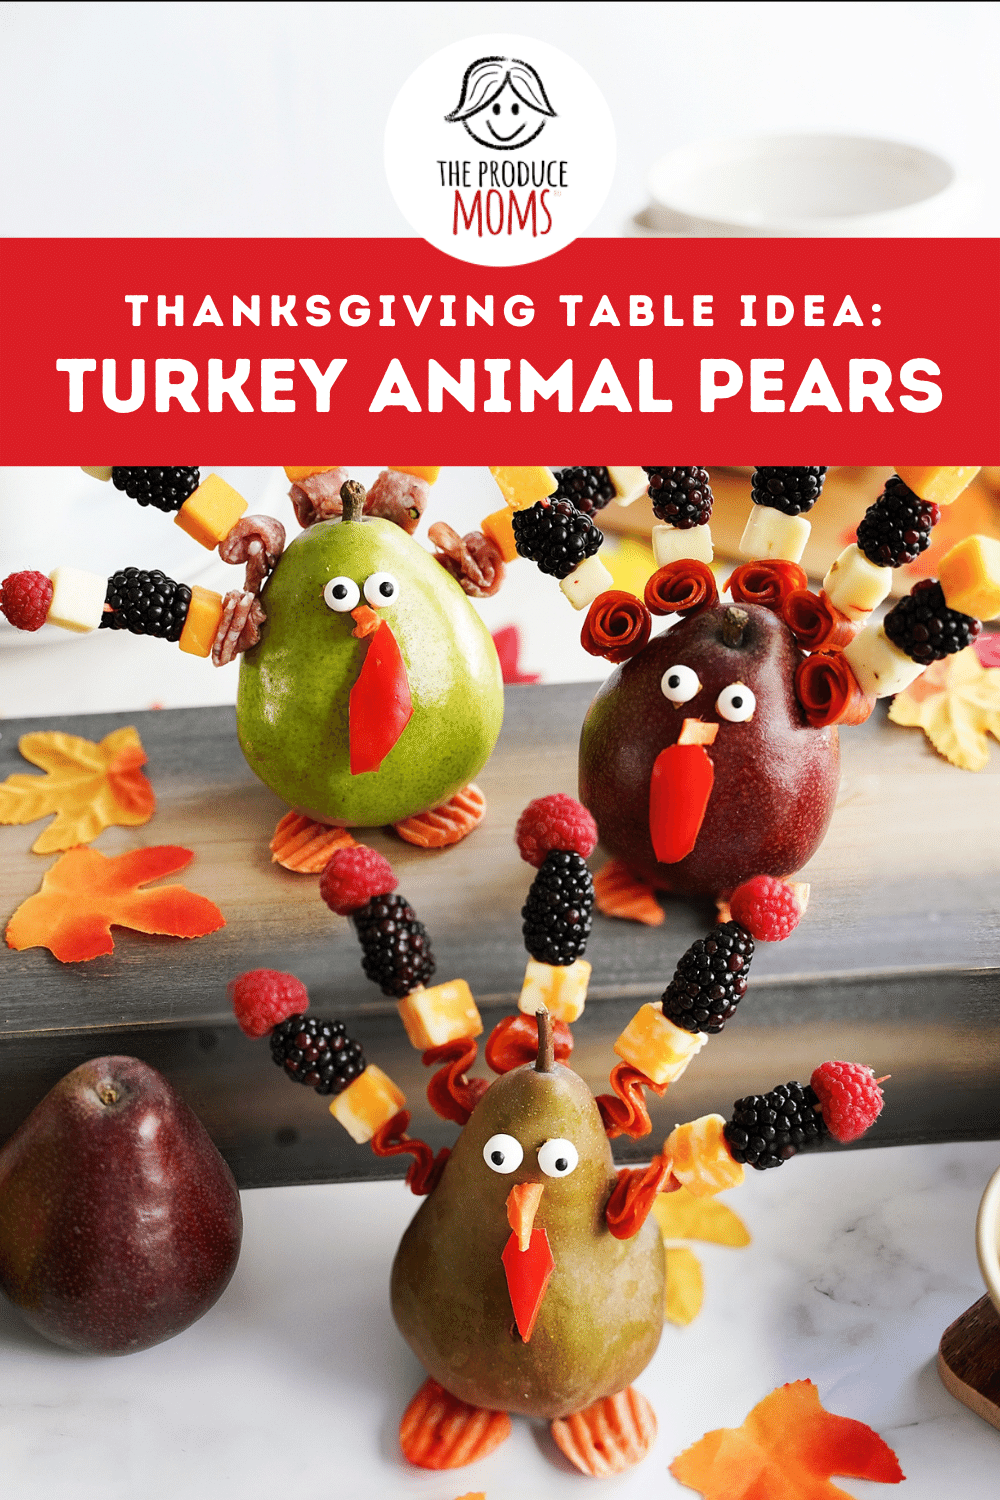 Pinterest Pin: Turkey Animal Pears